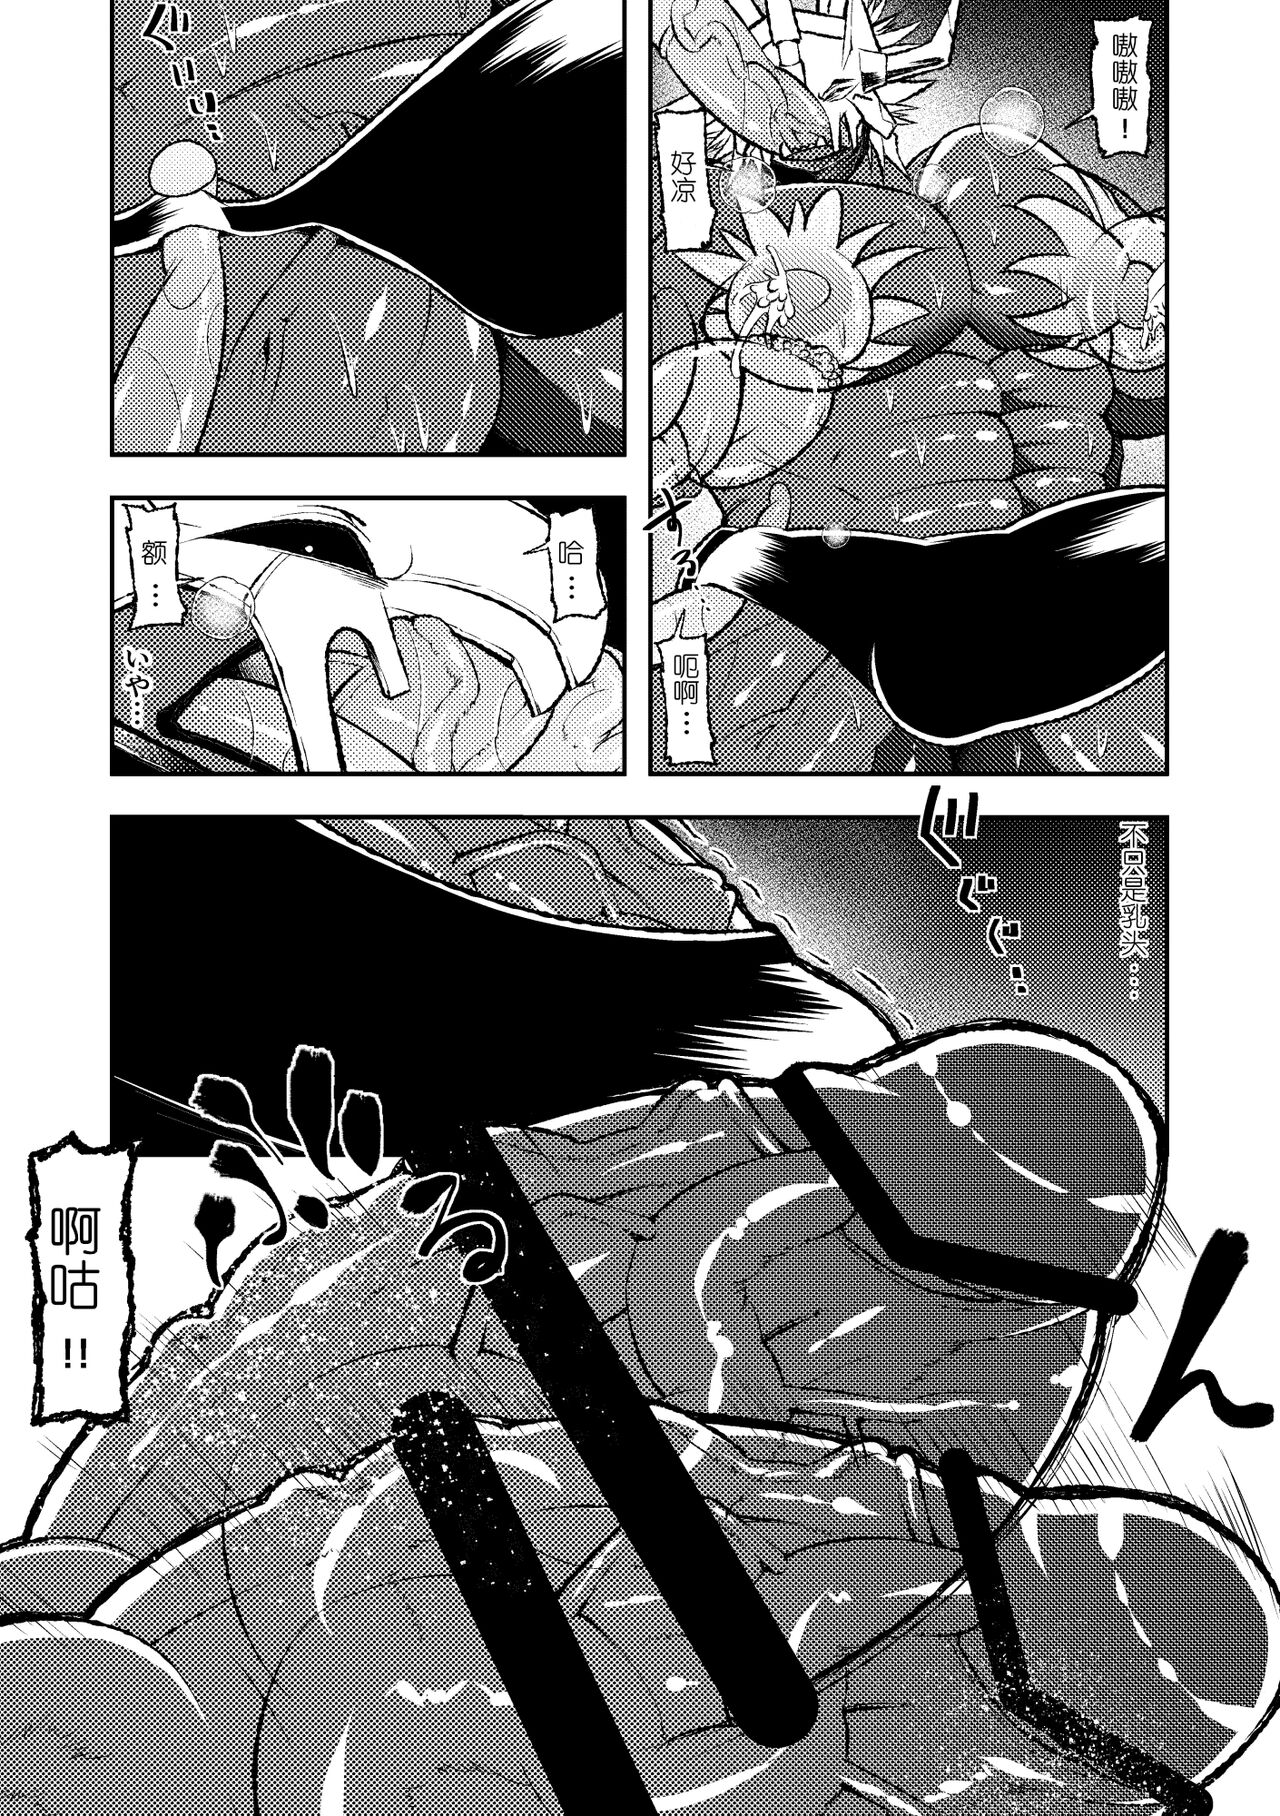 (Shinshun Kemoket) [Urusai Kokuen (Ekataraf)] BUG (Digimon) 【日曜日汉化】 (新春けもケット) [うるさい黒鉛 (エカタラフ)] バグ (デジモン)